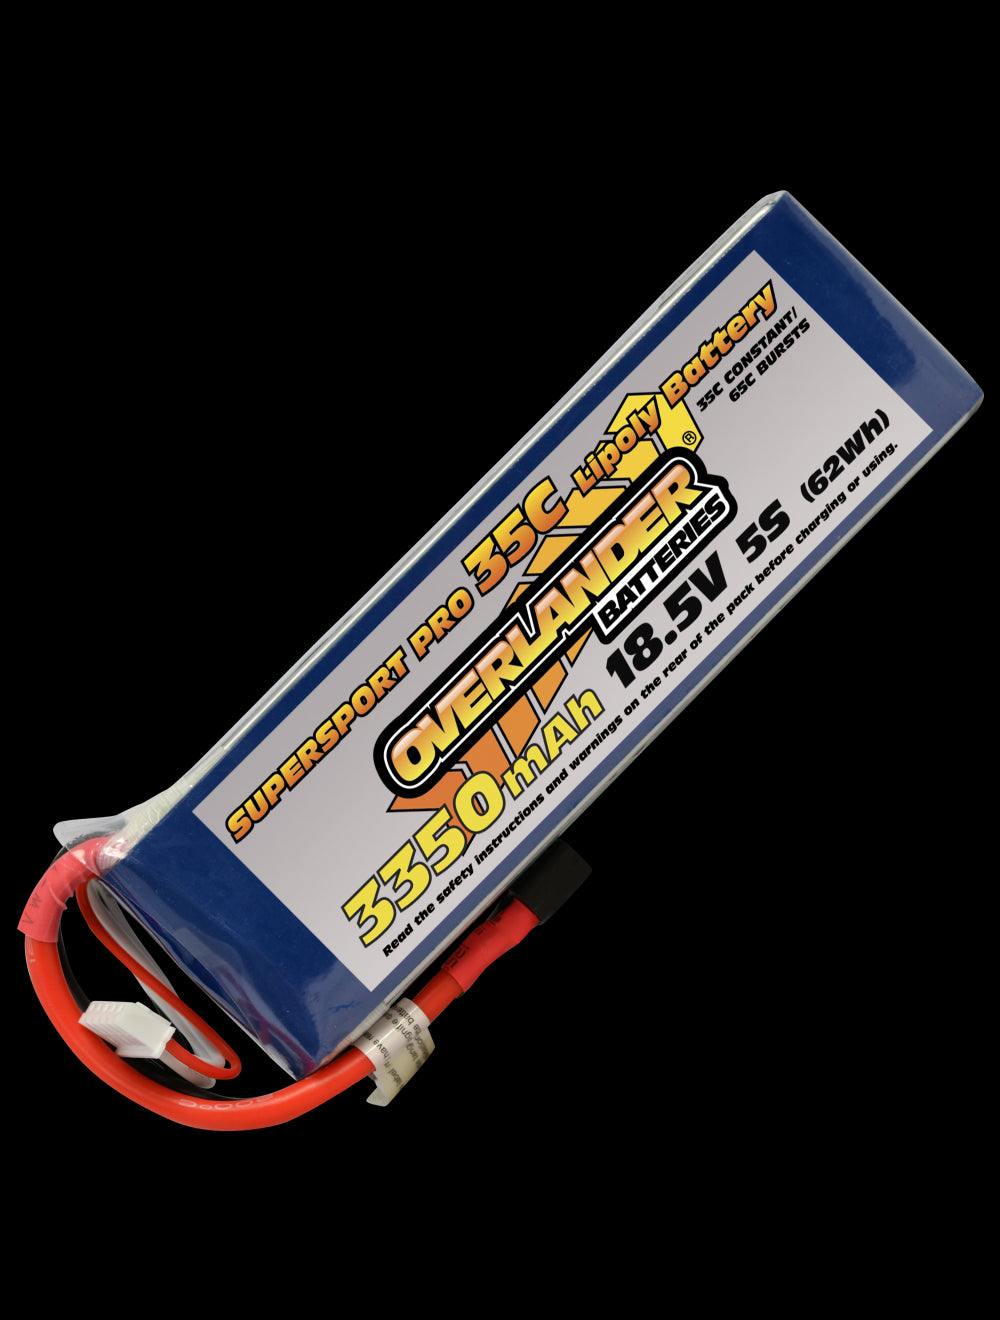 Overlander 3350mAh 18.5V 5S 35C Supersport Pro LiPo Battery - XT90 Connector 3123